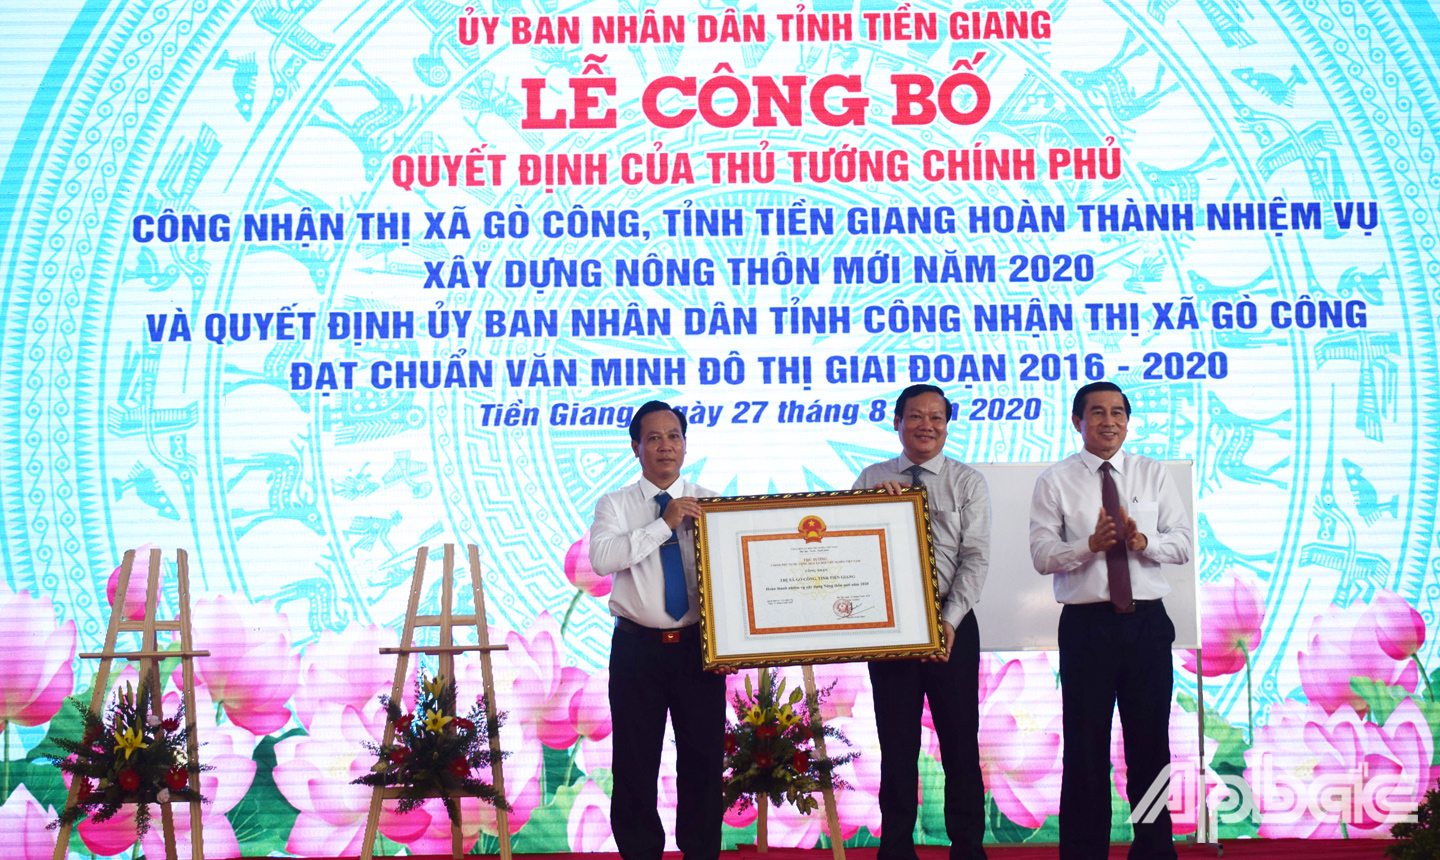 Đồng chí Lê Văn Hưởng thay mặt Thủ tướng chính phủ trao bằng công nhận thị xã Gò Công hoàn thành nhiệm vụ xây dựng NTM. 